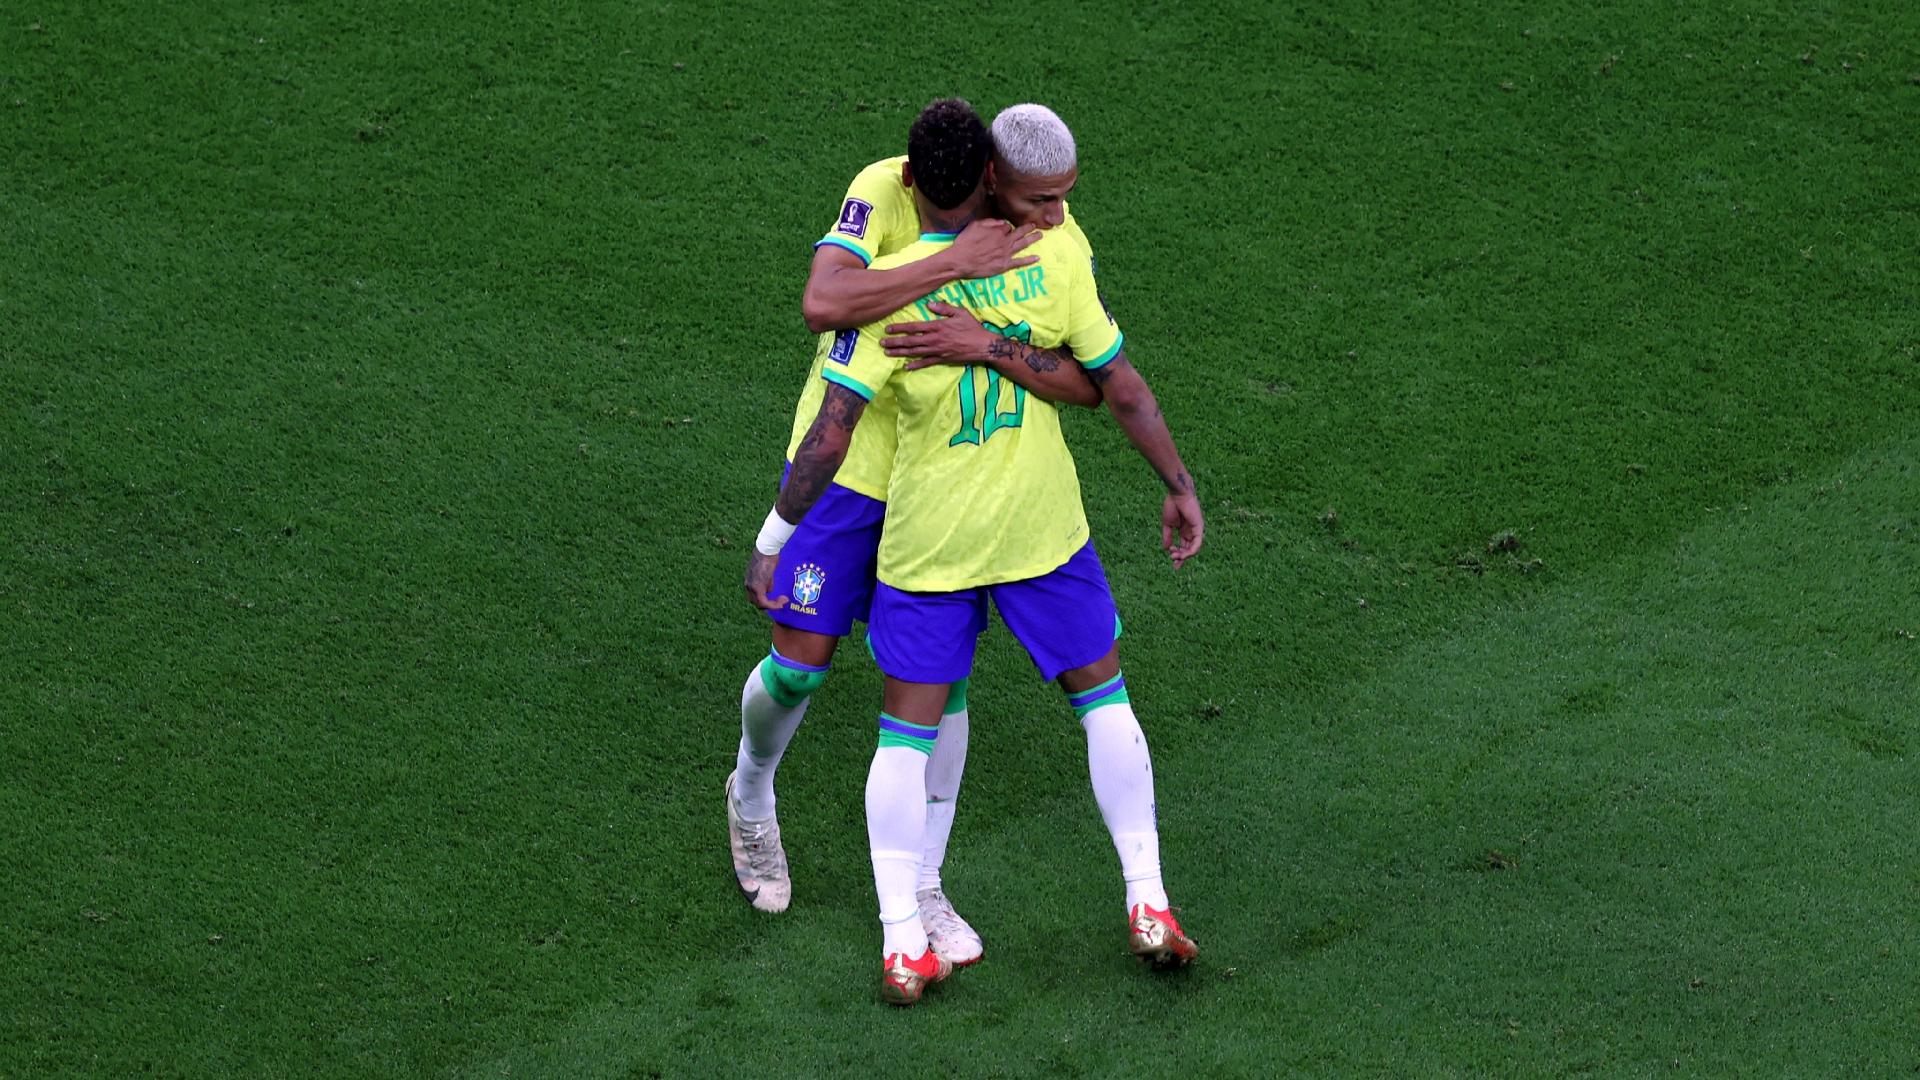 Museu do Boca aposta em fãs brasileiros, usa imagem de Neymar e 'Messi  corintiano' - Notícias - UOL Copa do Mundo 2014